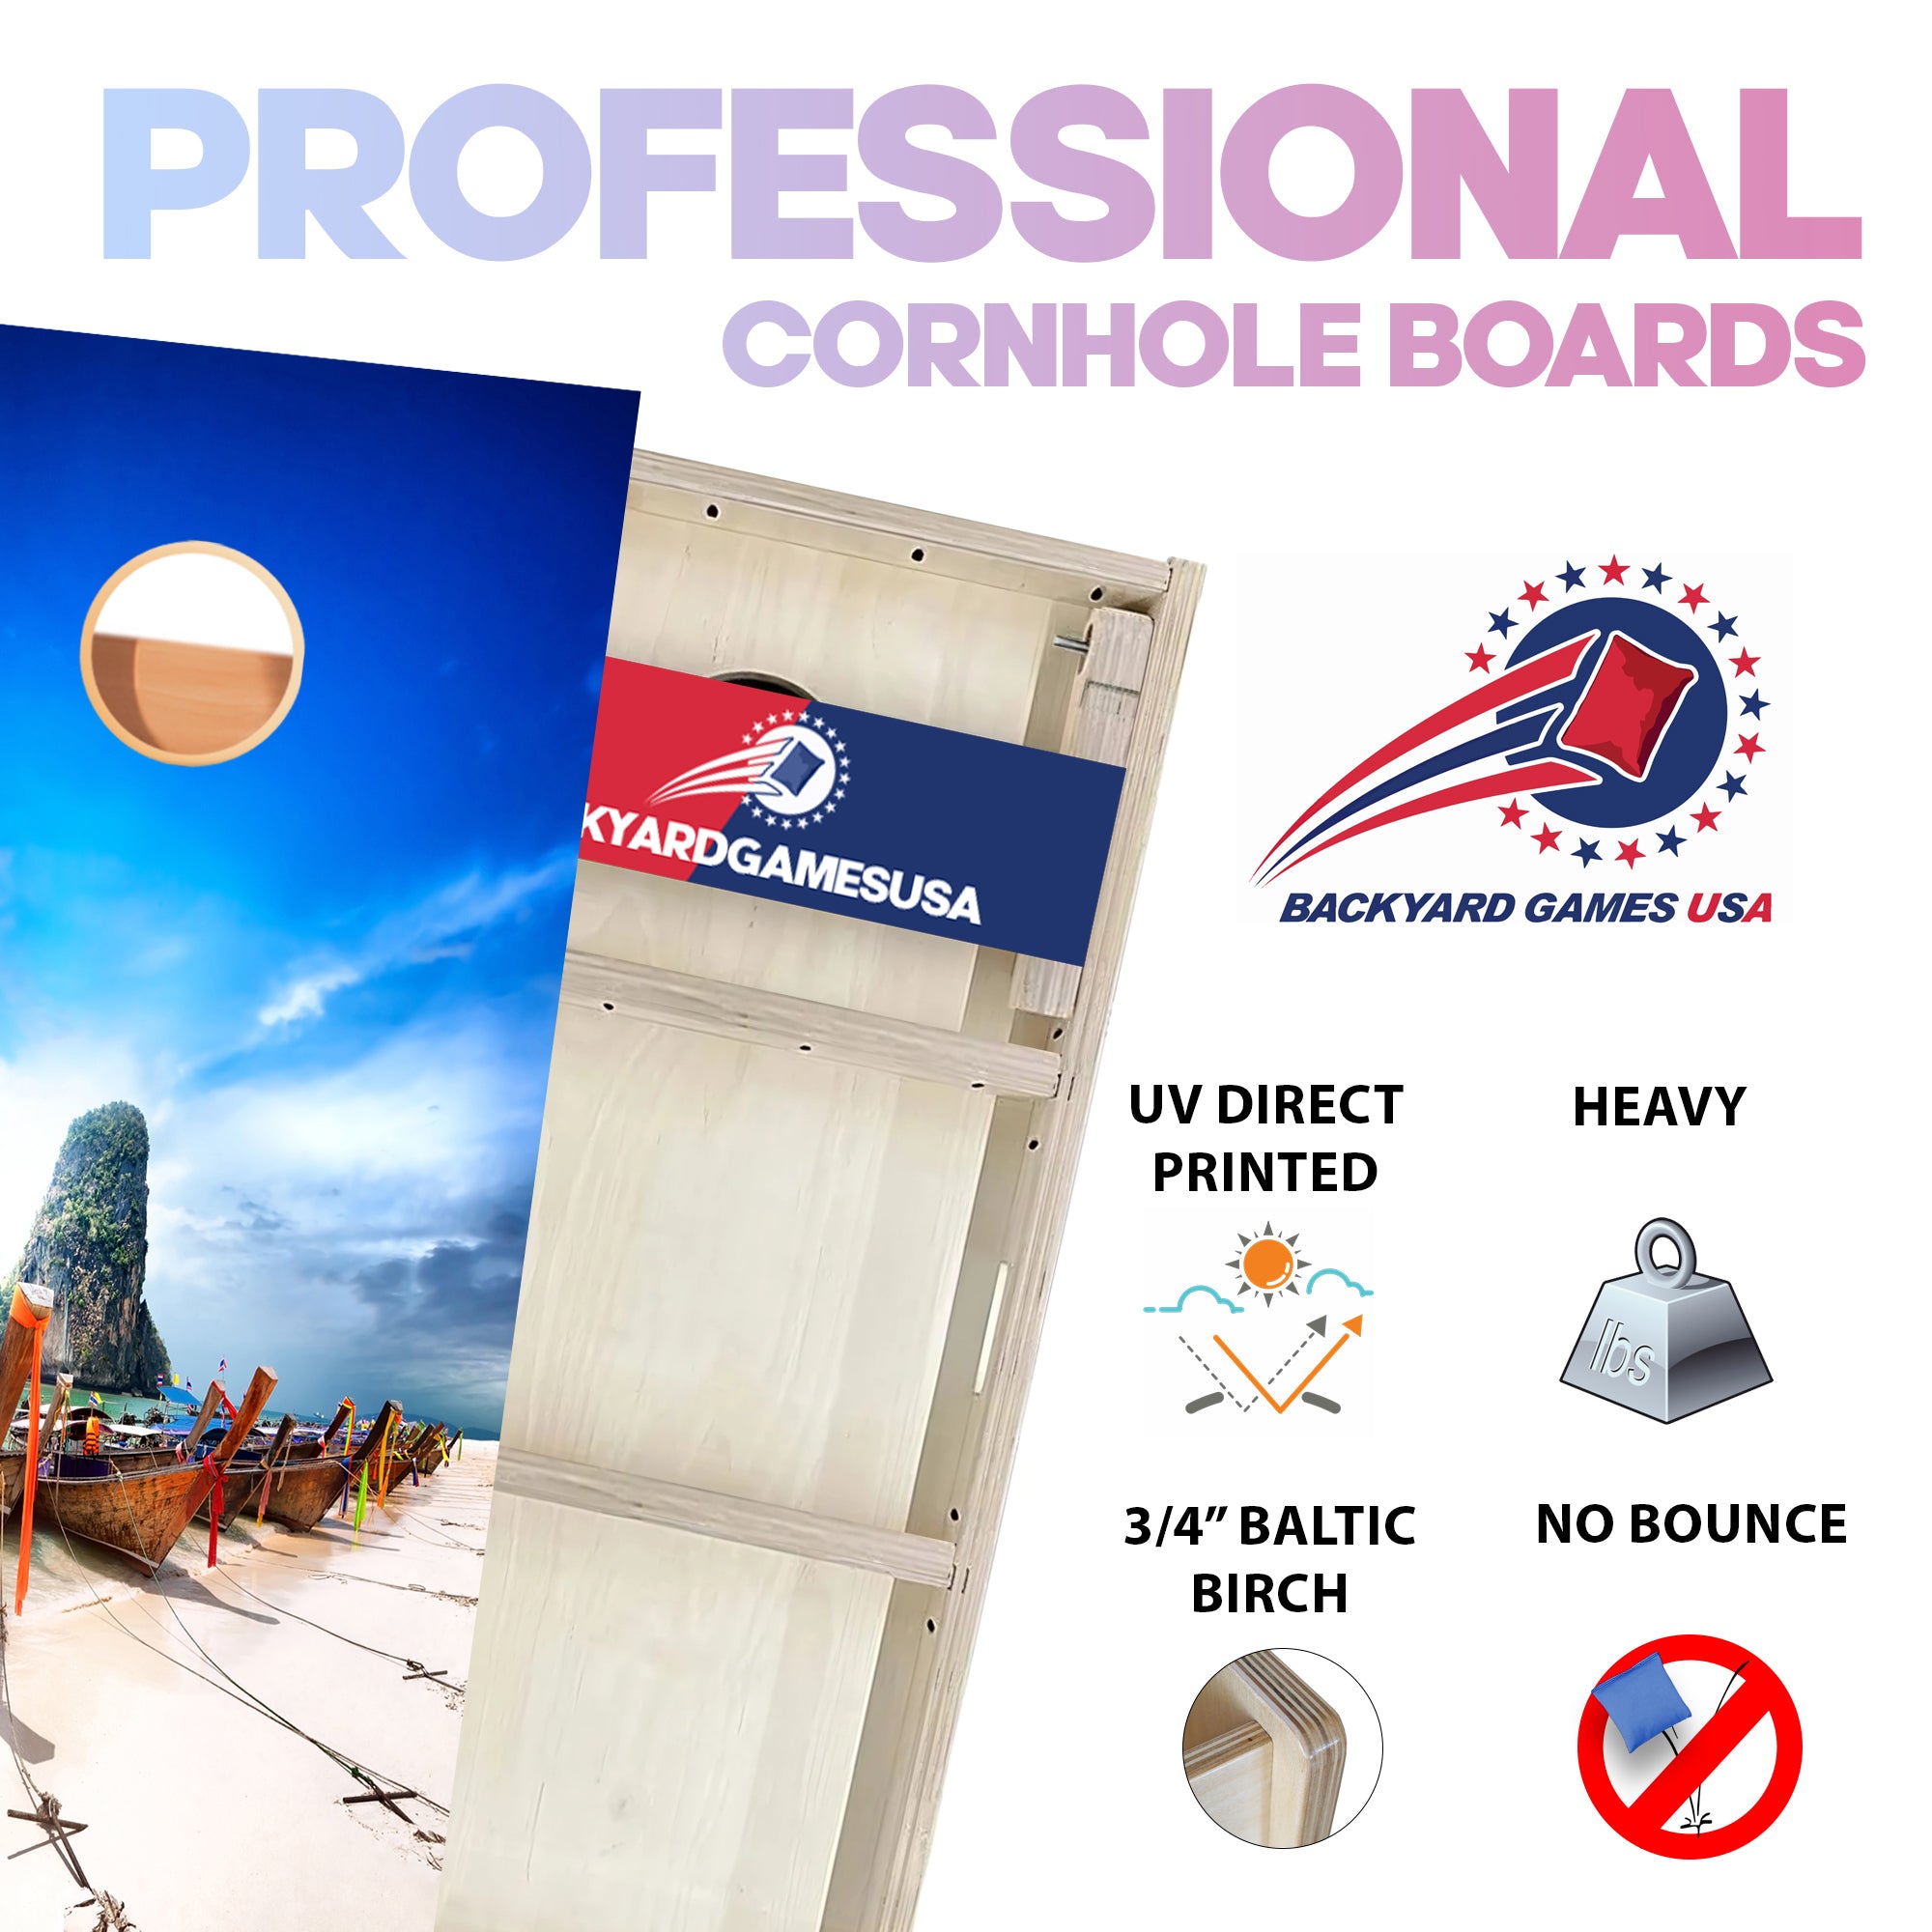 Kayak Beach Professional Cornhole Boards